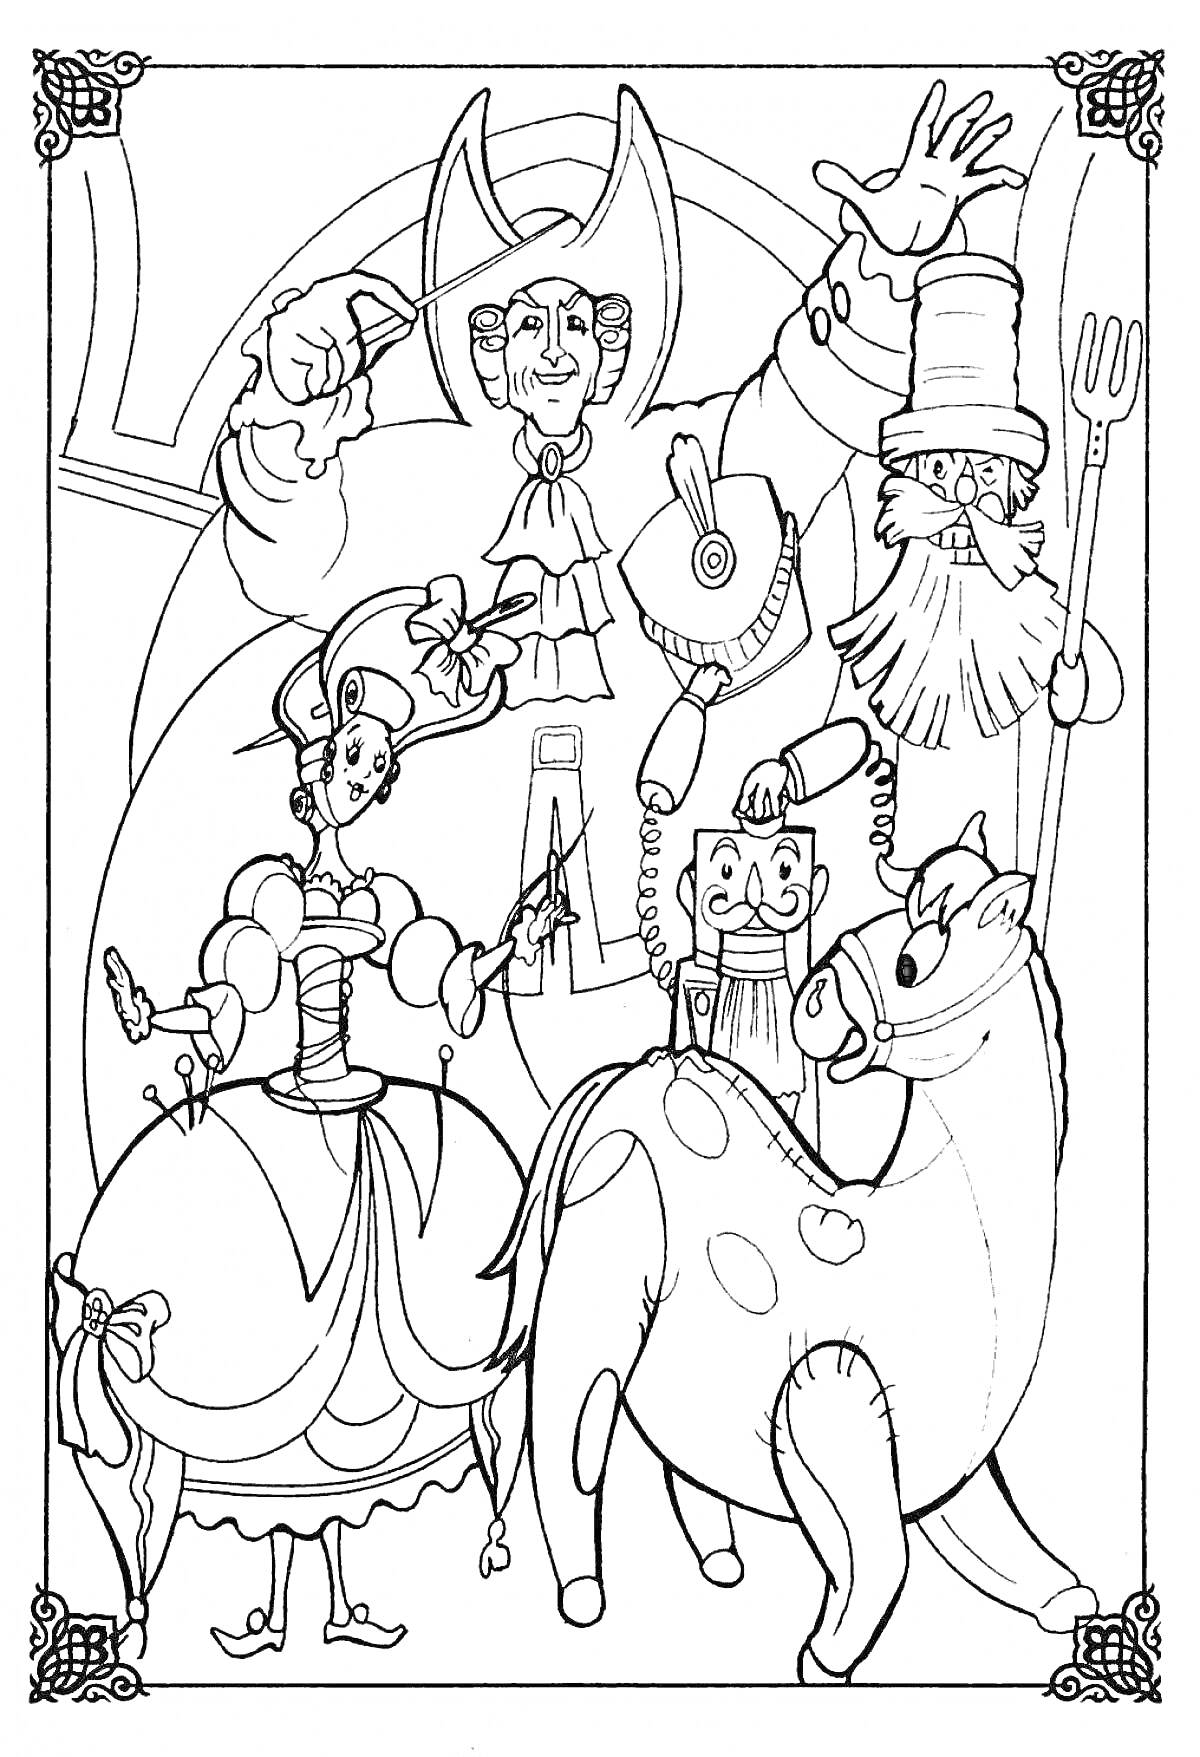 Главные герои Щелкунчика: Щелкунчик, деревянная лошадка, балерина, кукольный король и кукольный солдат